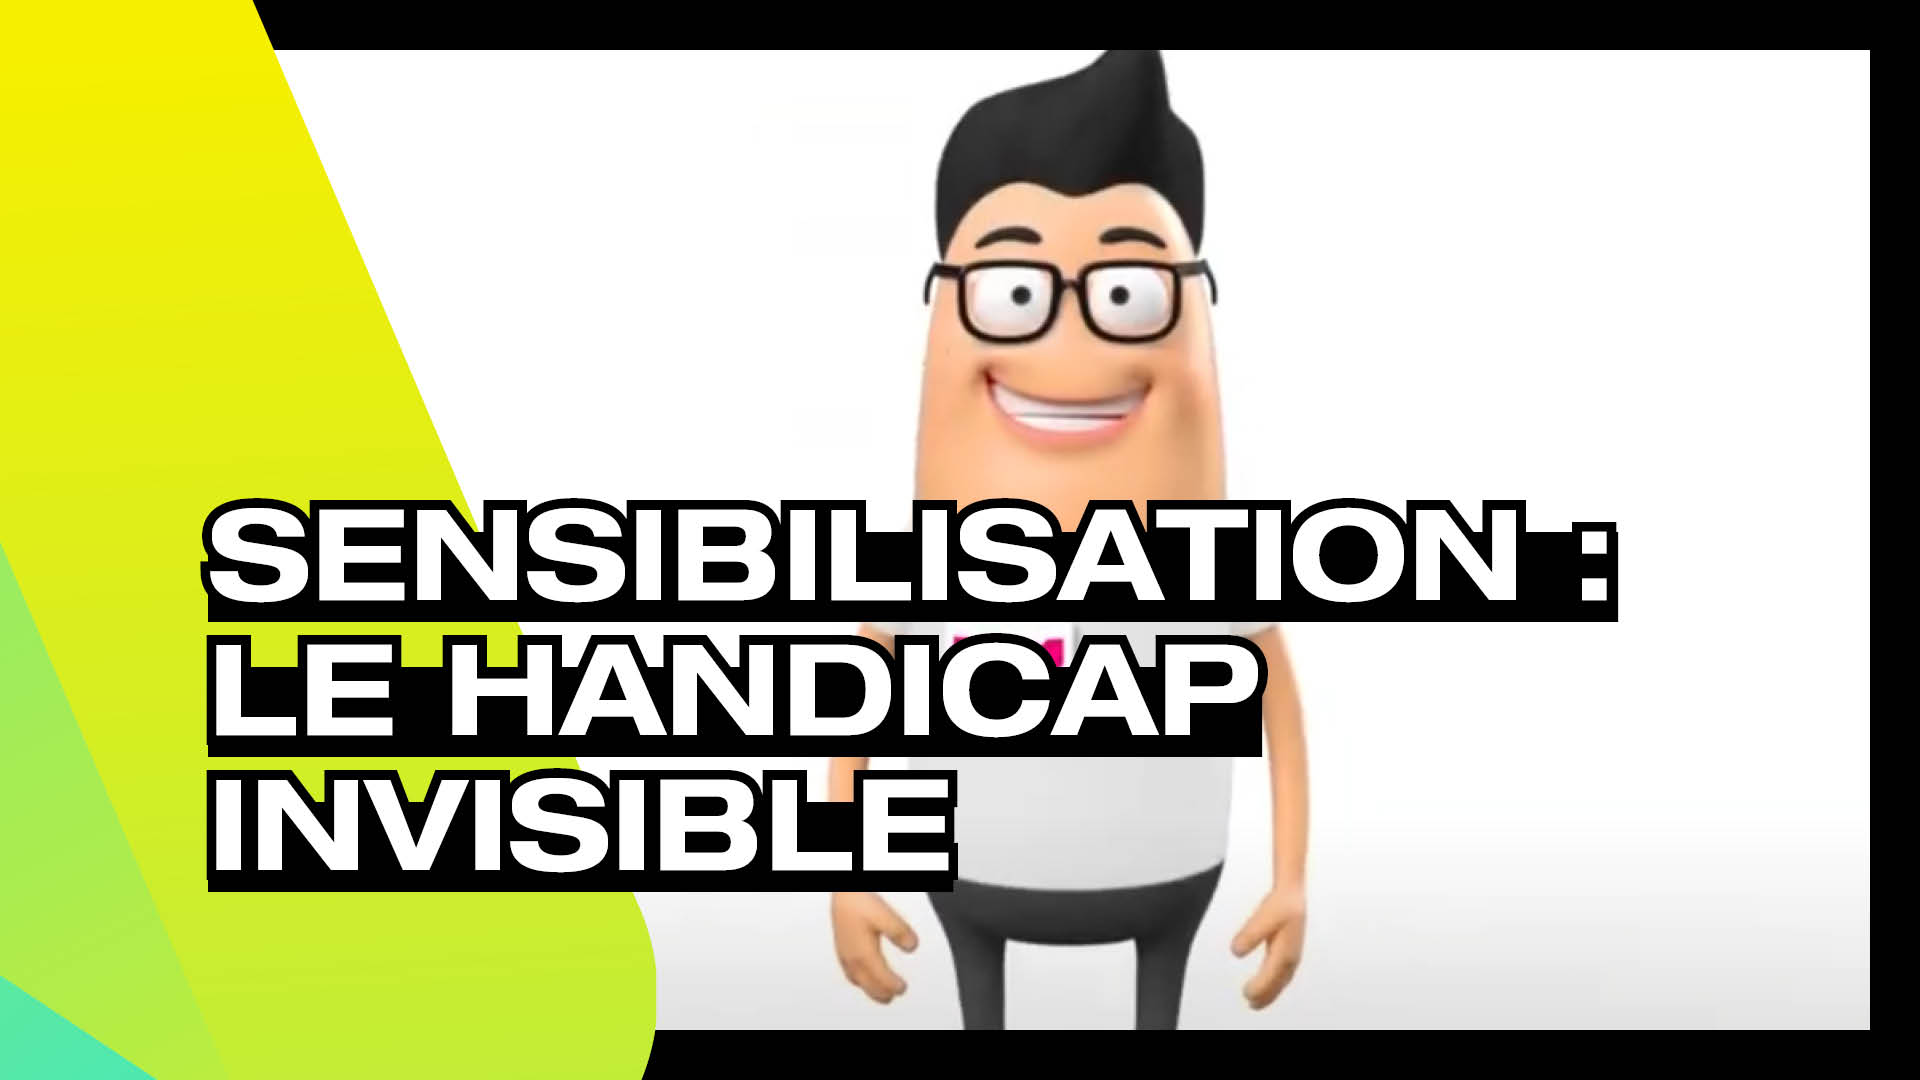 Sensibilisation - Le handicap invisible